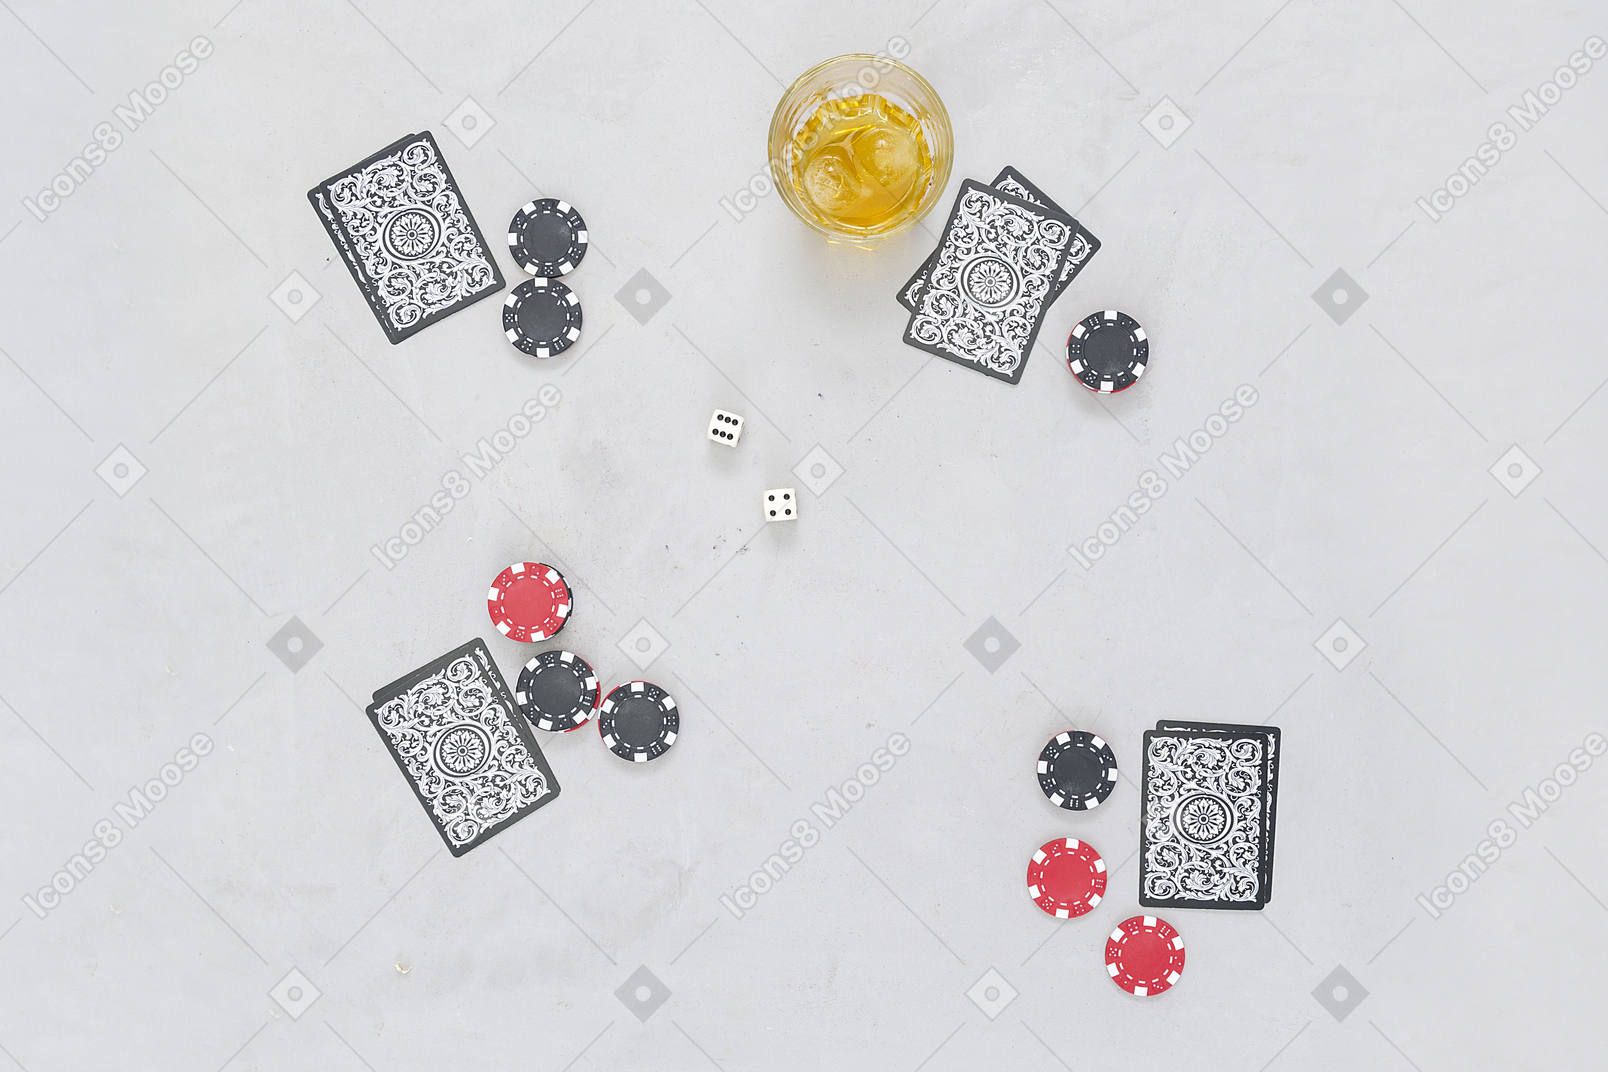 보드 카드 게임은 알코올 음료와 잘 어울립니다.